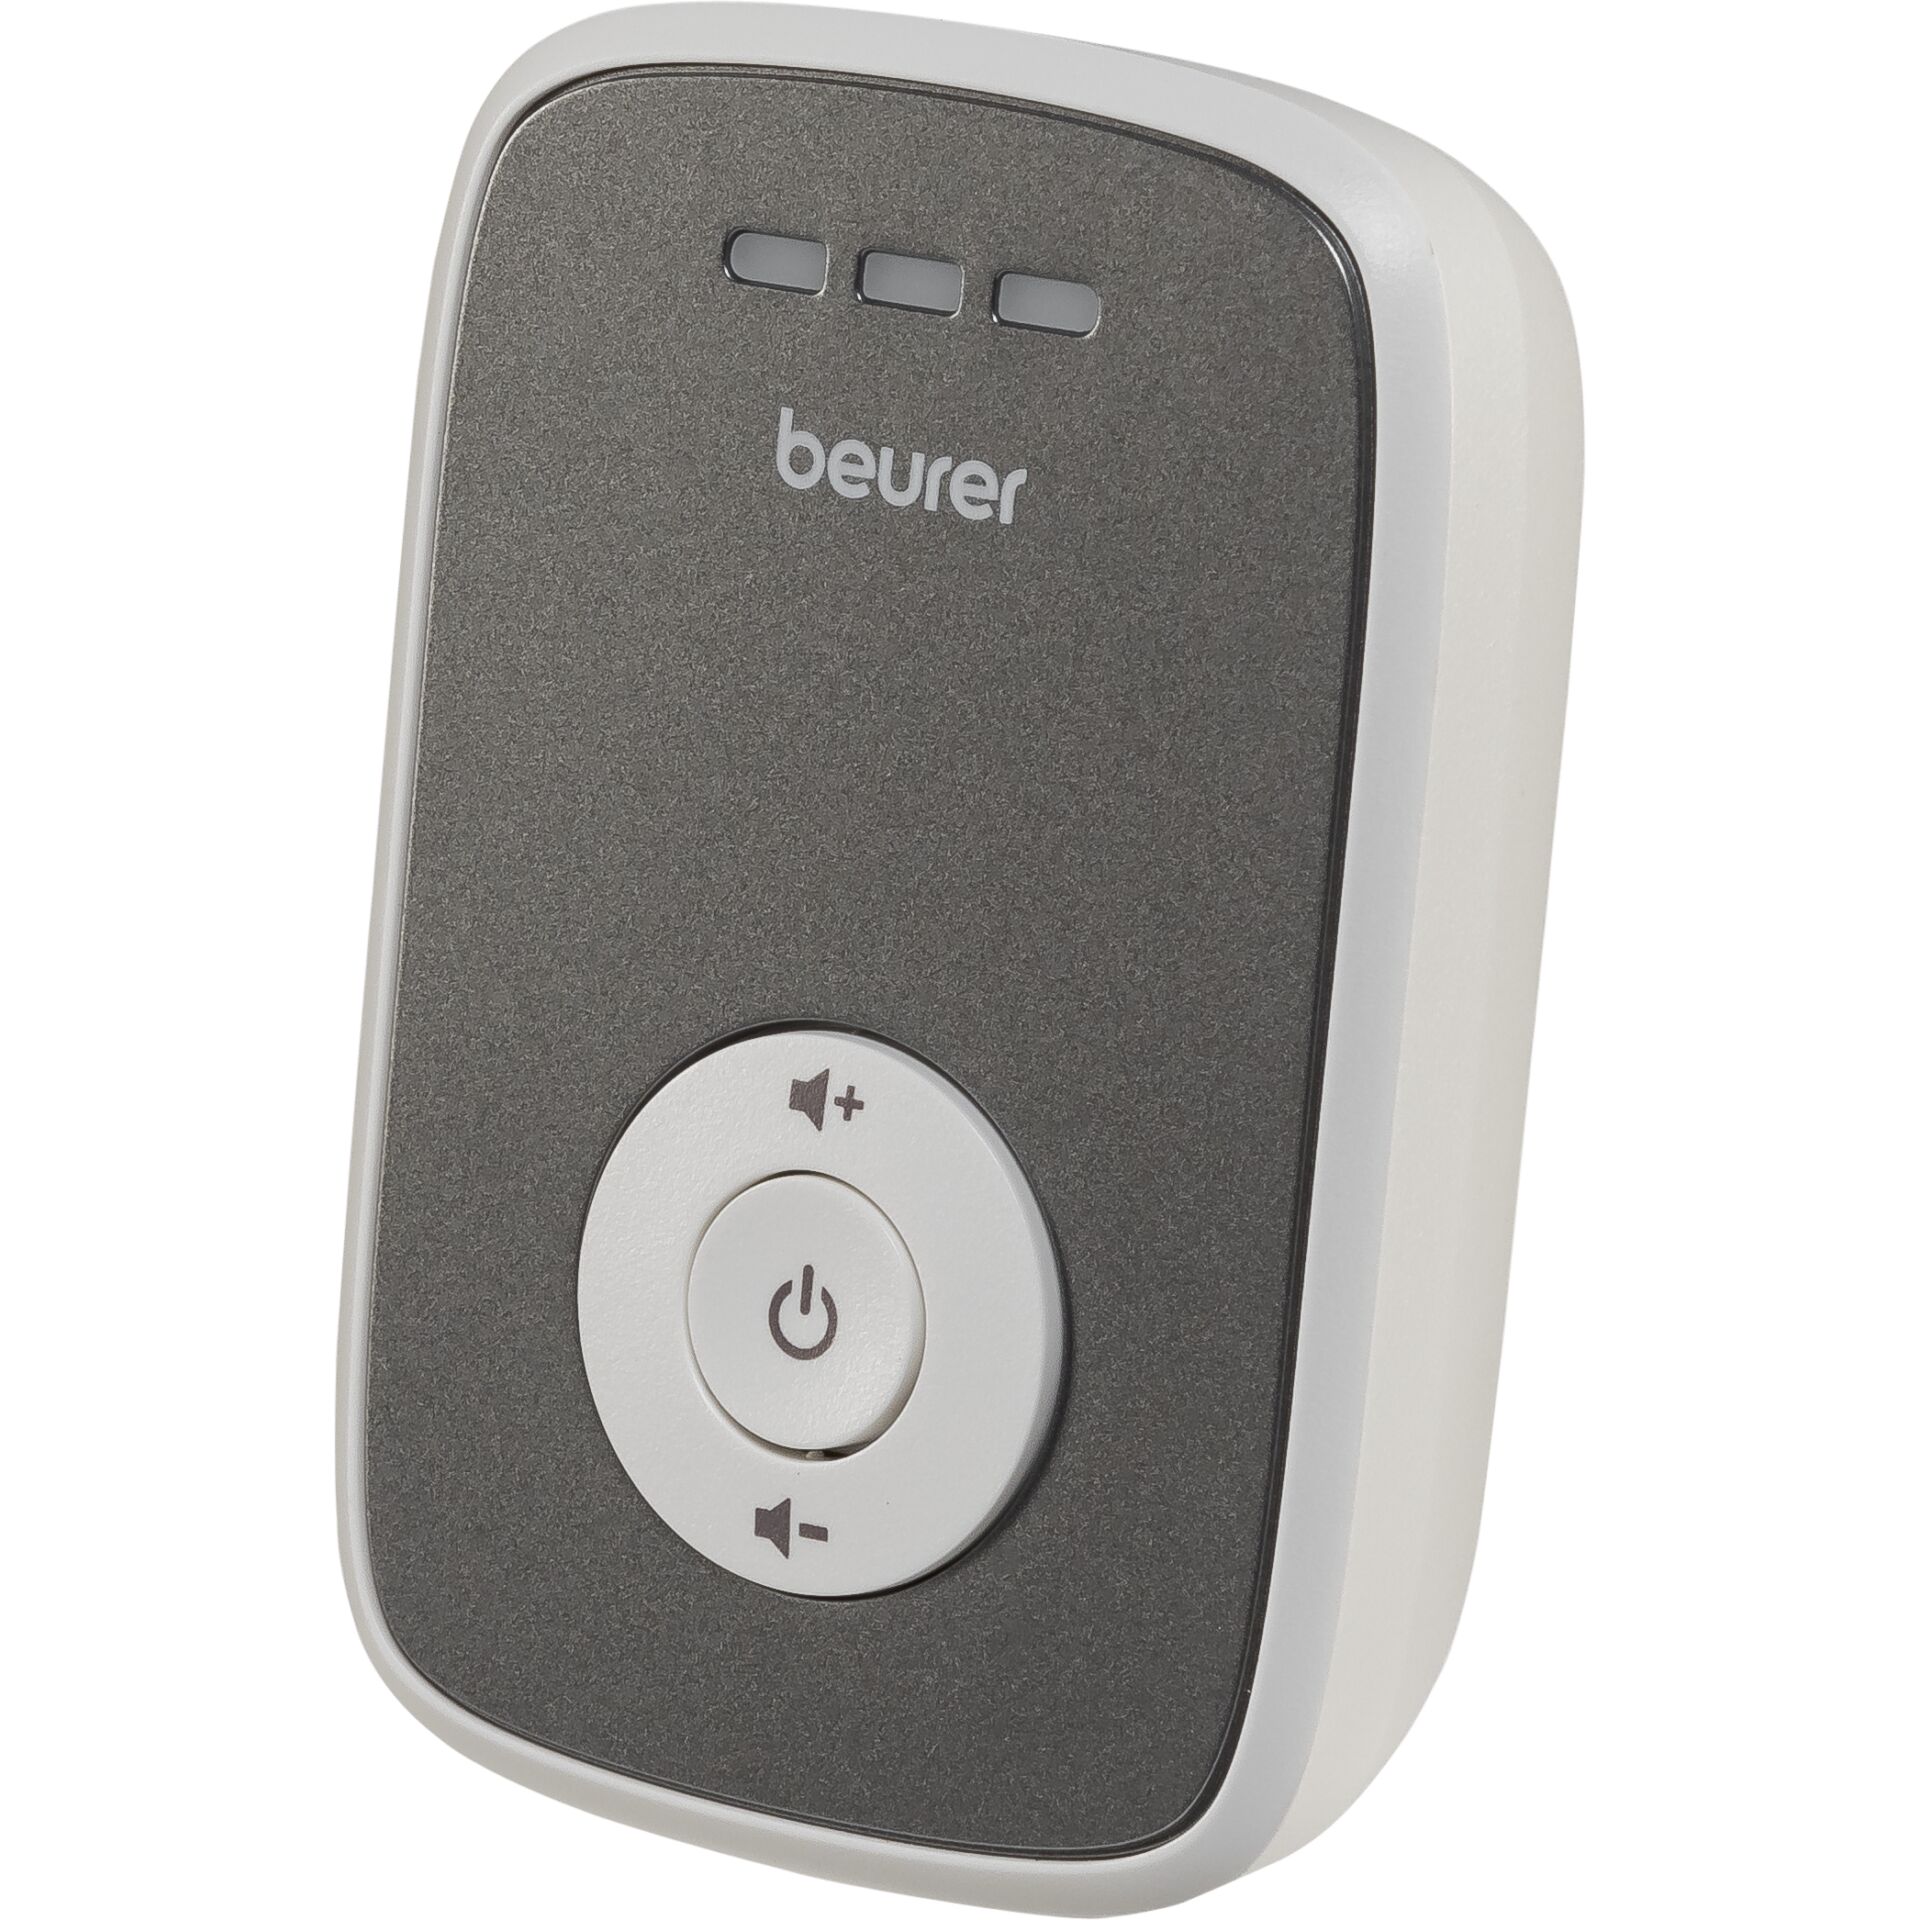 Beurer -BY 33 -Babyphon -FHSS -120 Kanäle -Beurer Accessories